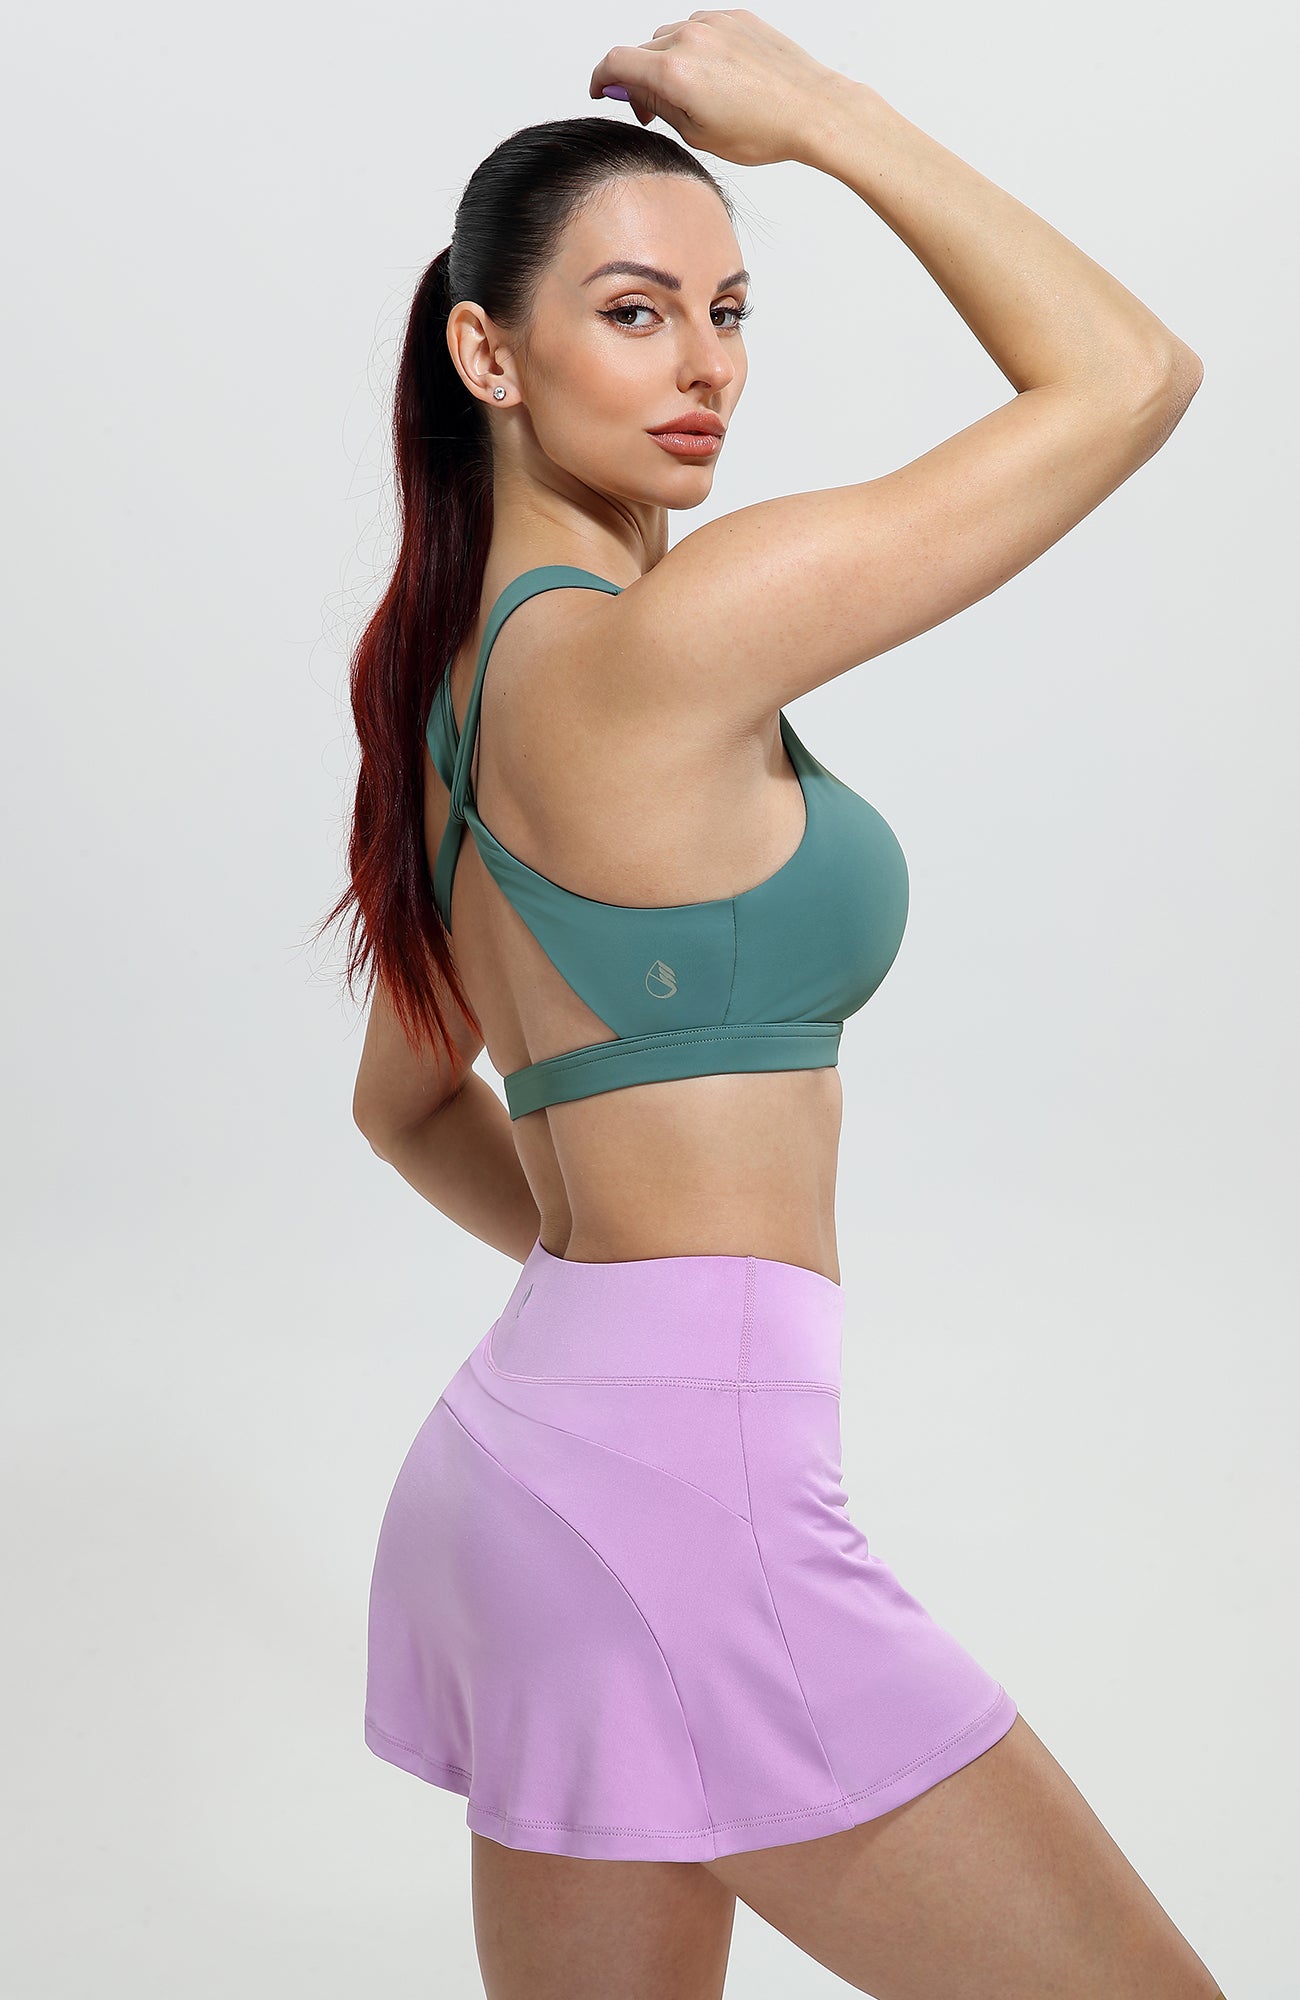 zanvin Sports Bras for Women,Clearance Women's Vest Yoga Comfortable  Wireless Underwear Sports Bras